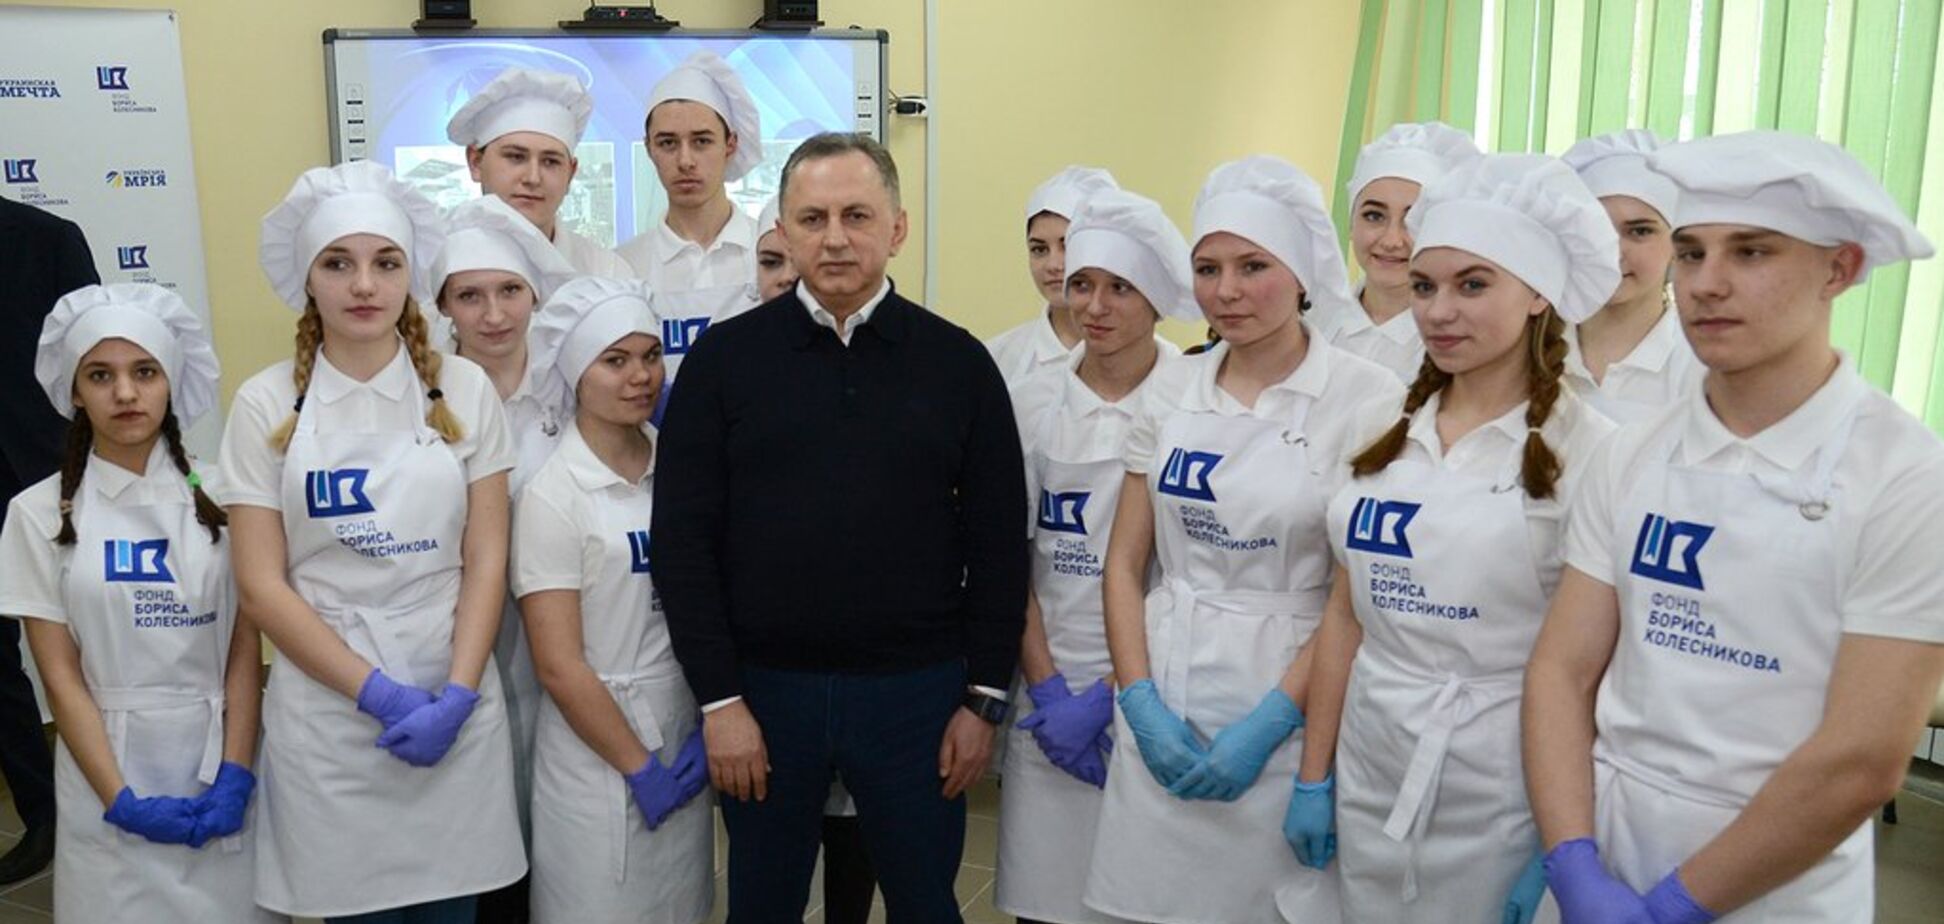 Колесников открыл на Донбассе Школу поварского искусства с бесплатными мастер-классами